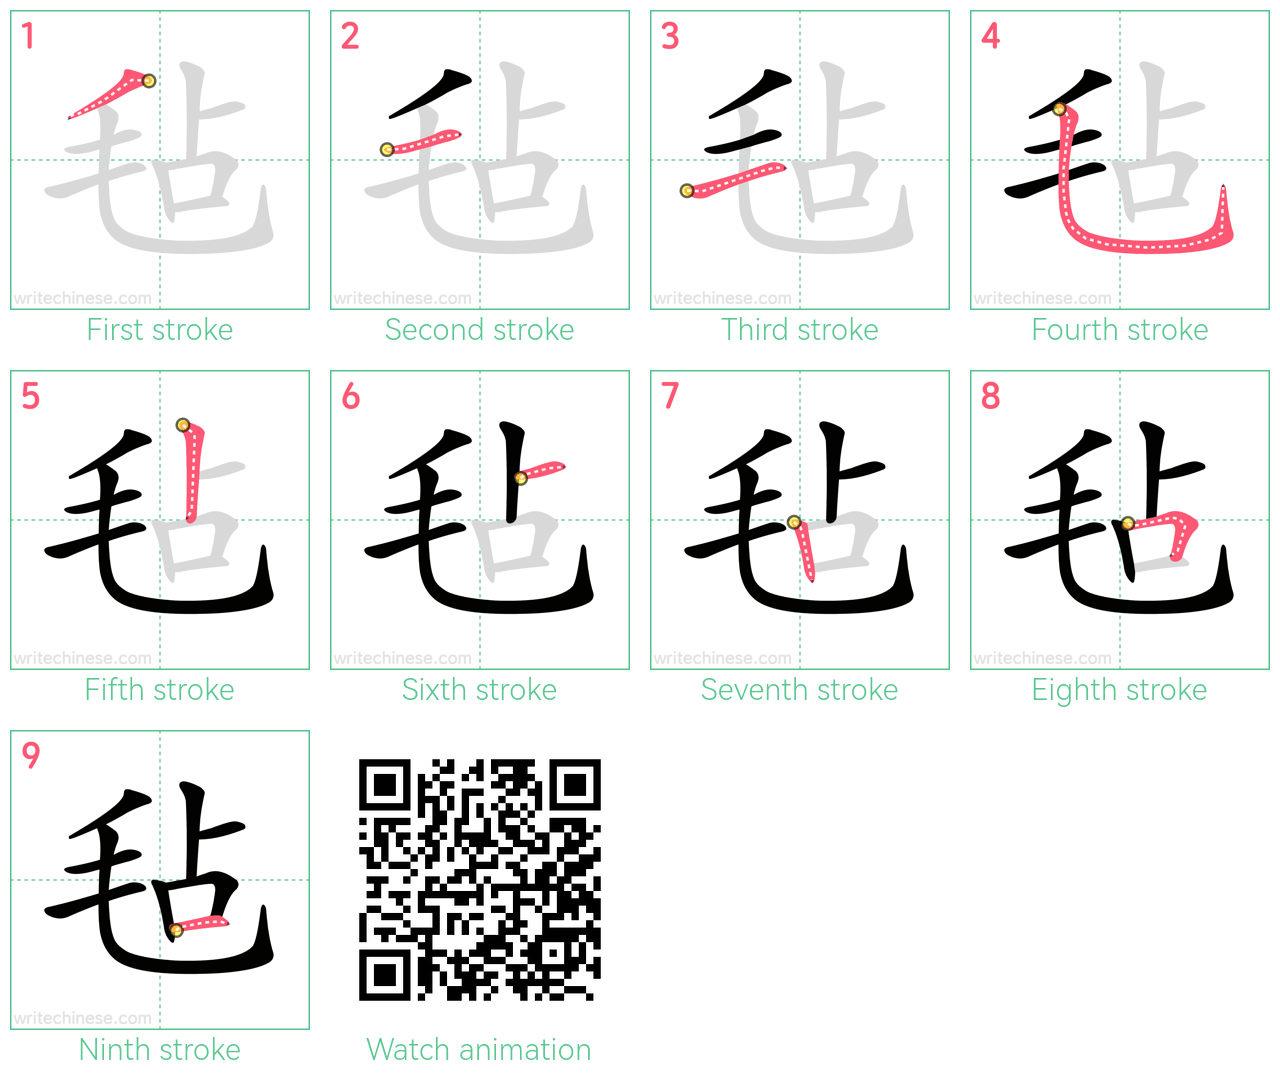 毡 step-by-step stroke order diagrams